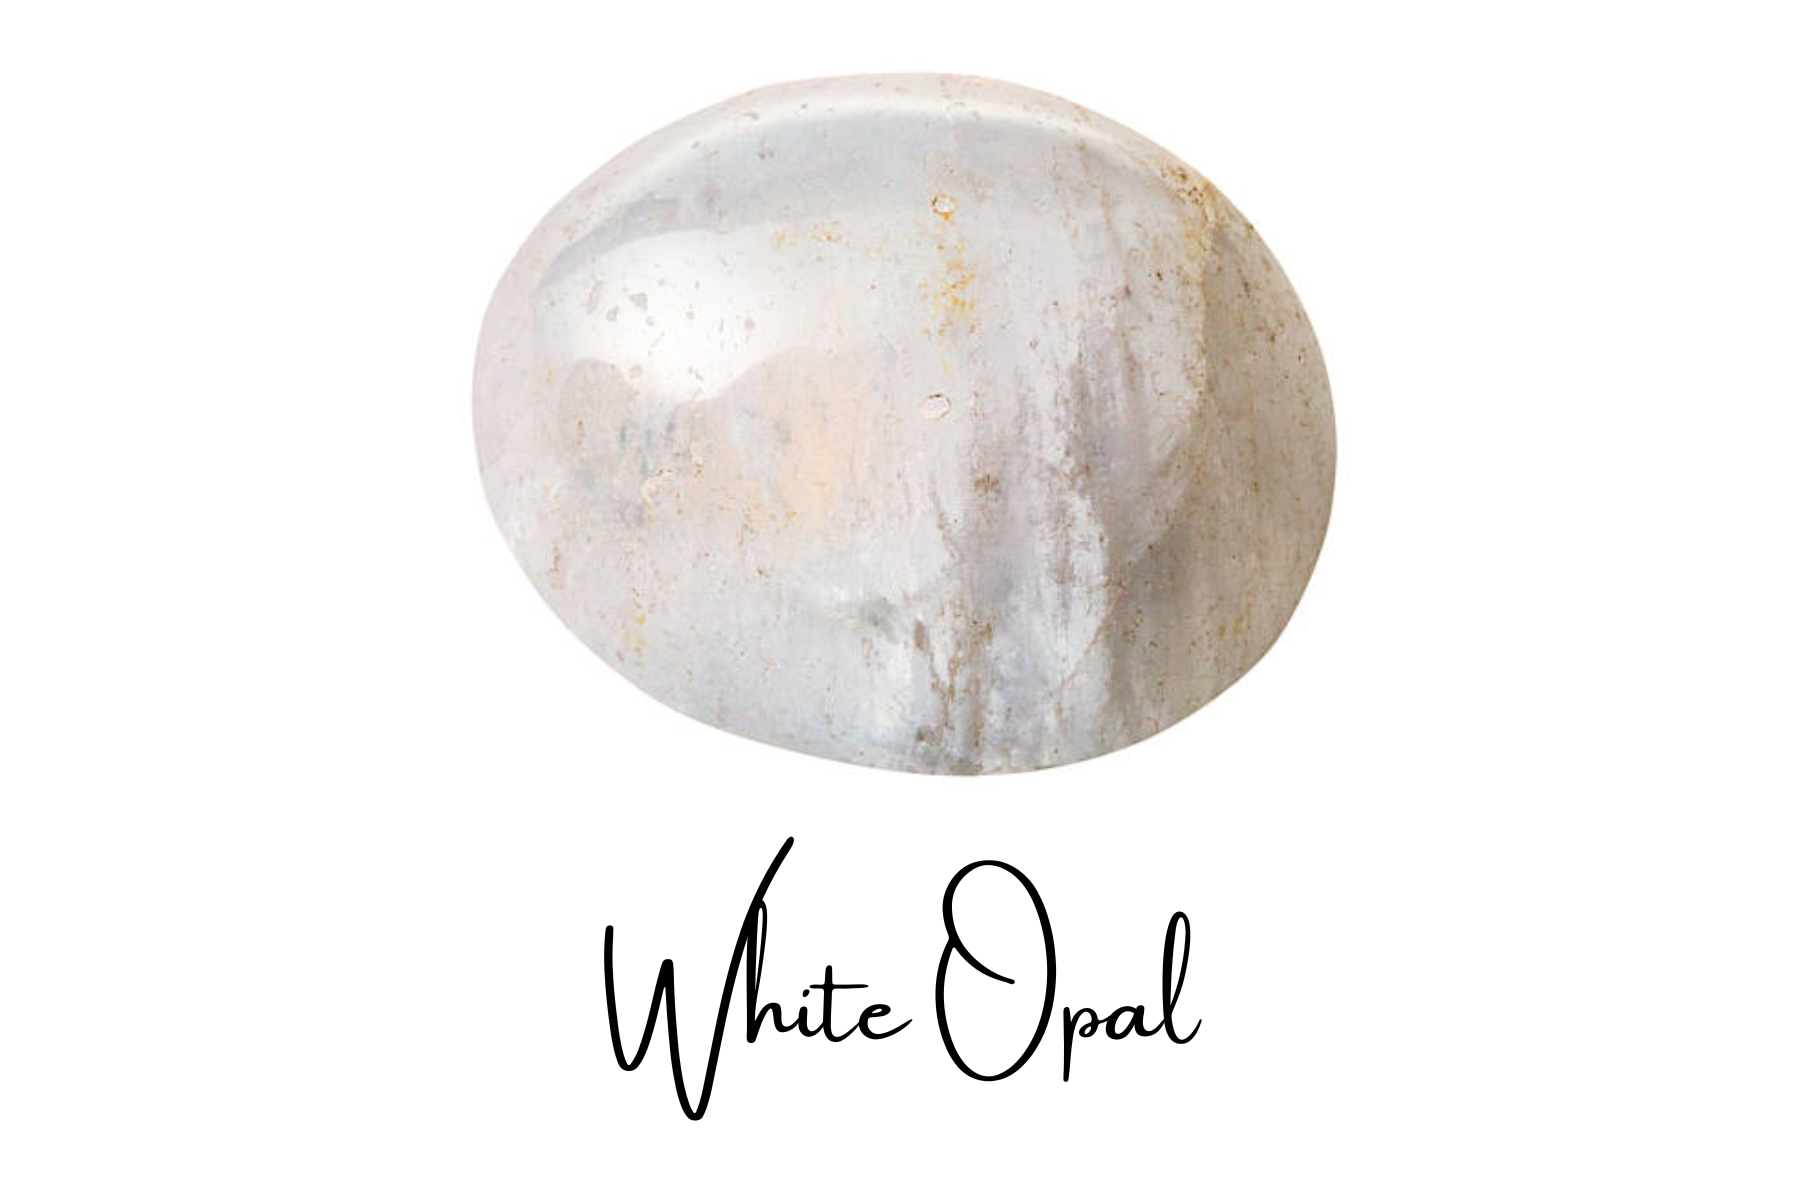 An oblong white opal